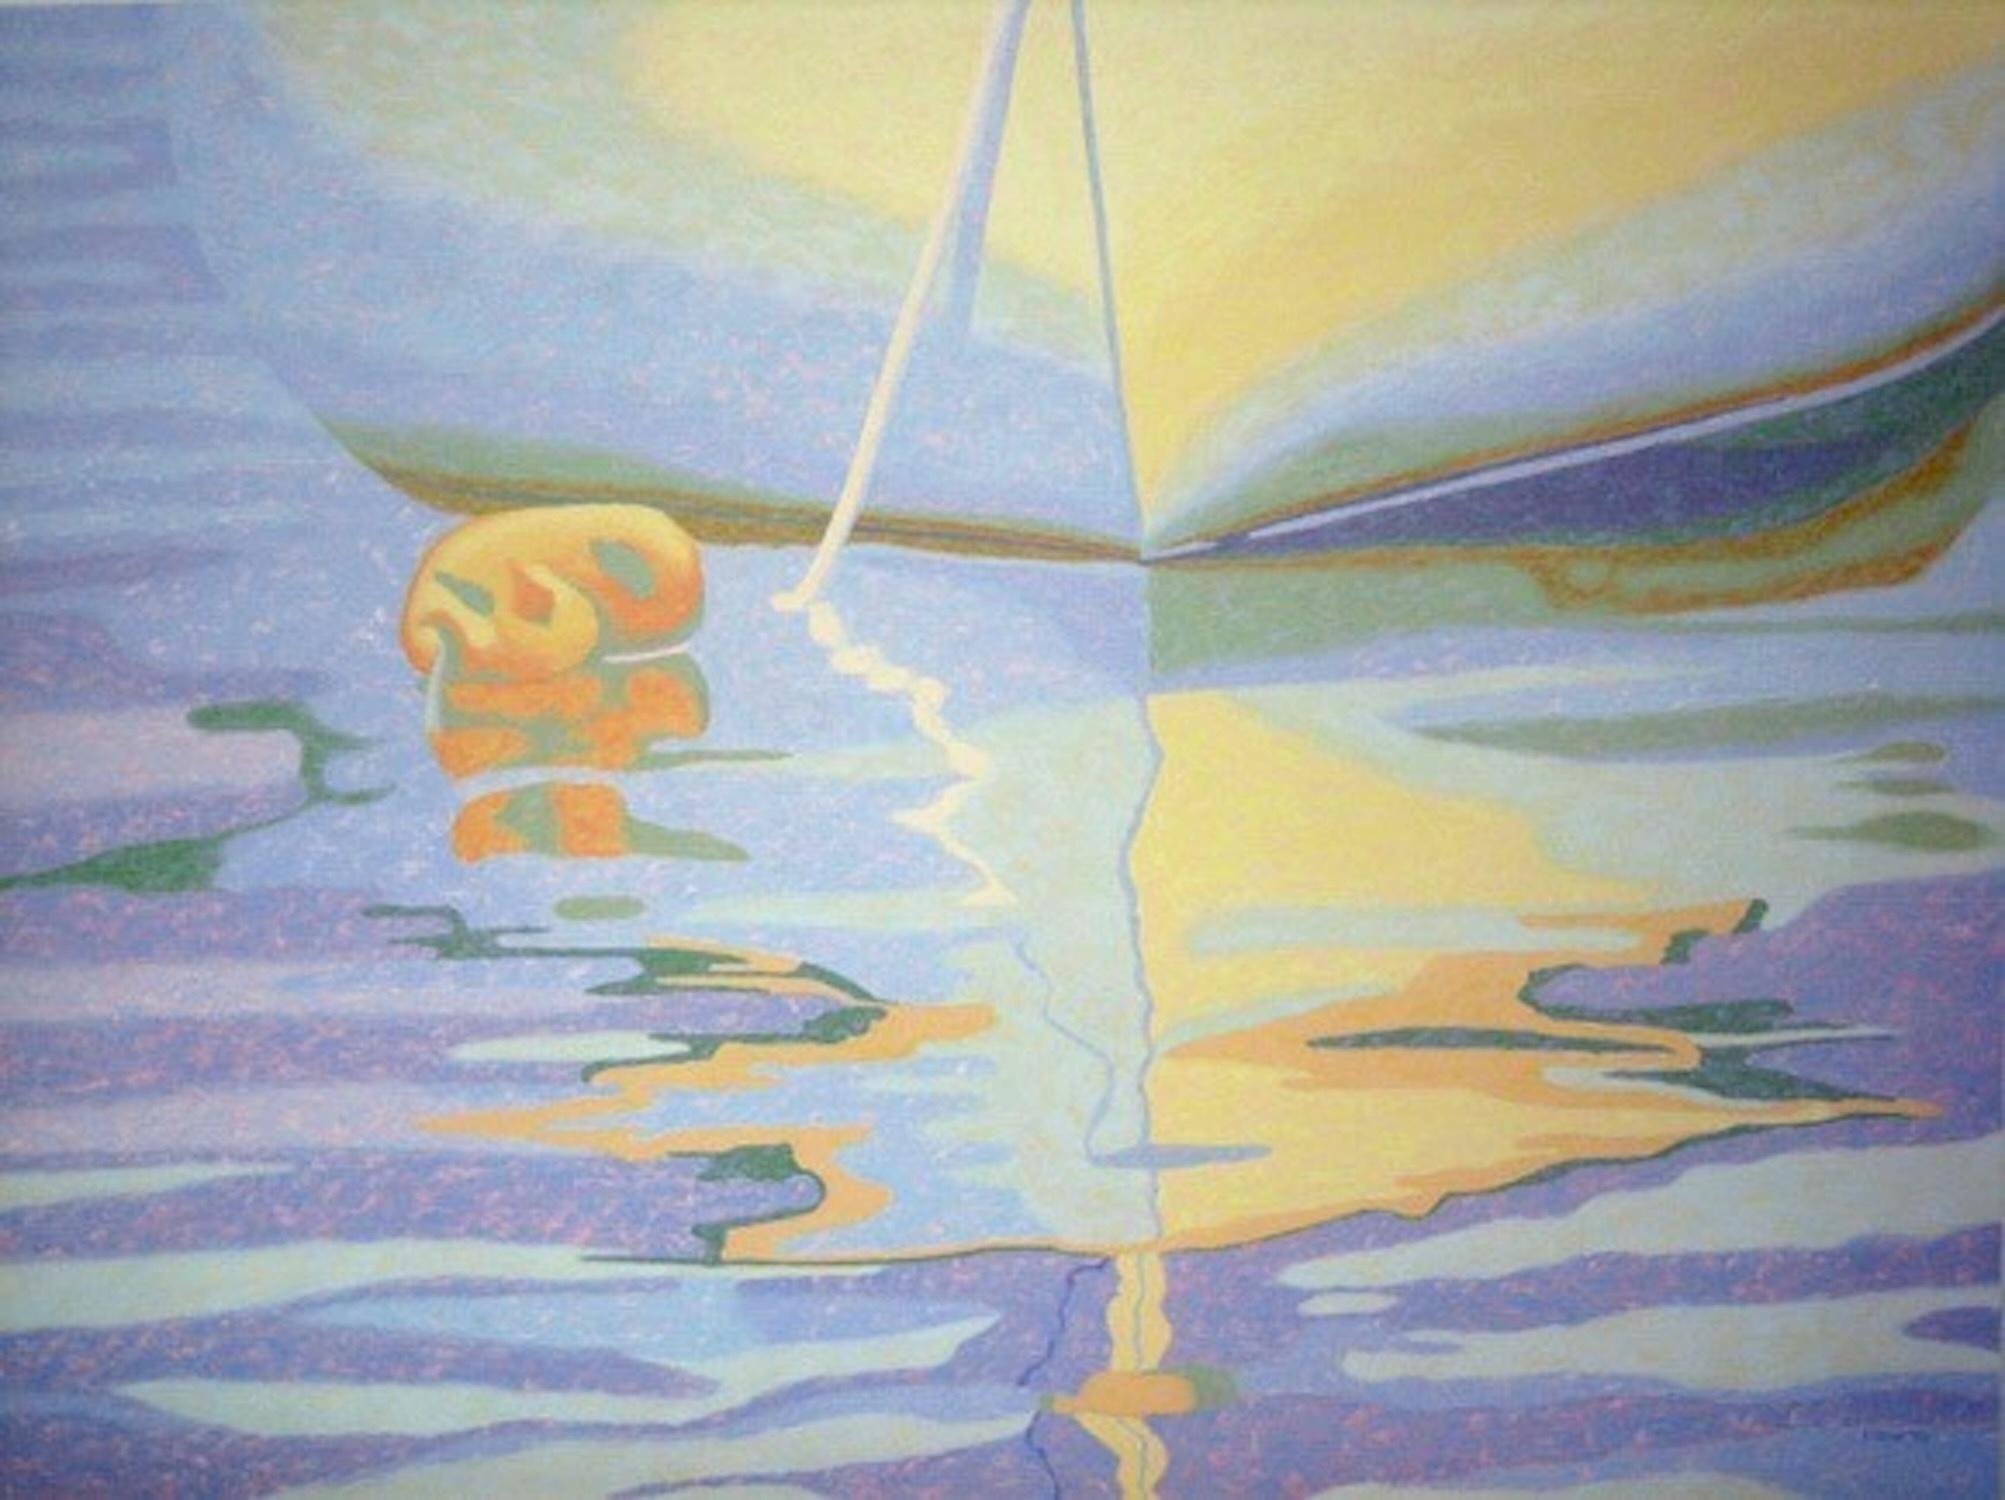 Landscape Painting Marcia Wise - "Reflets reposants", contemporain, eau, bleu, jaune, violet, peinture à l'huile.